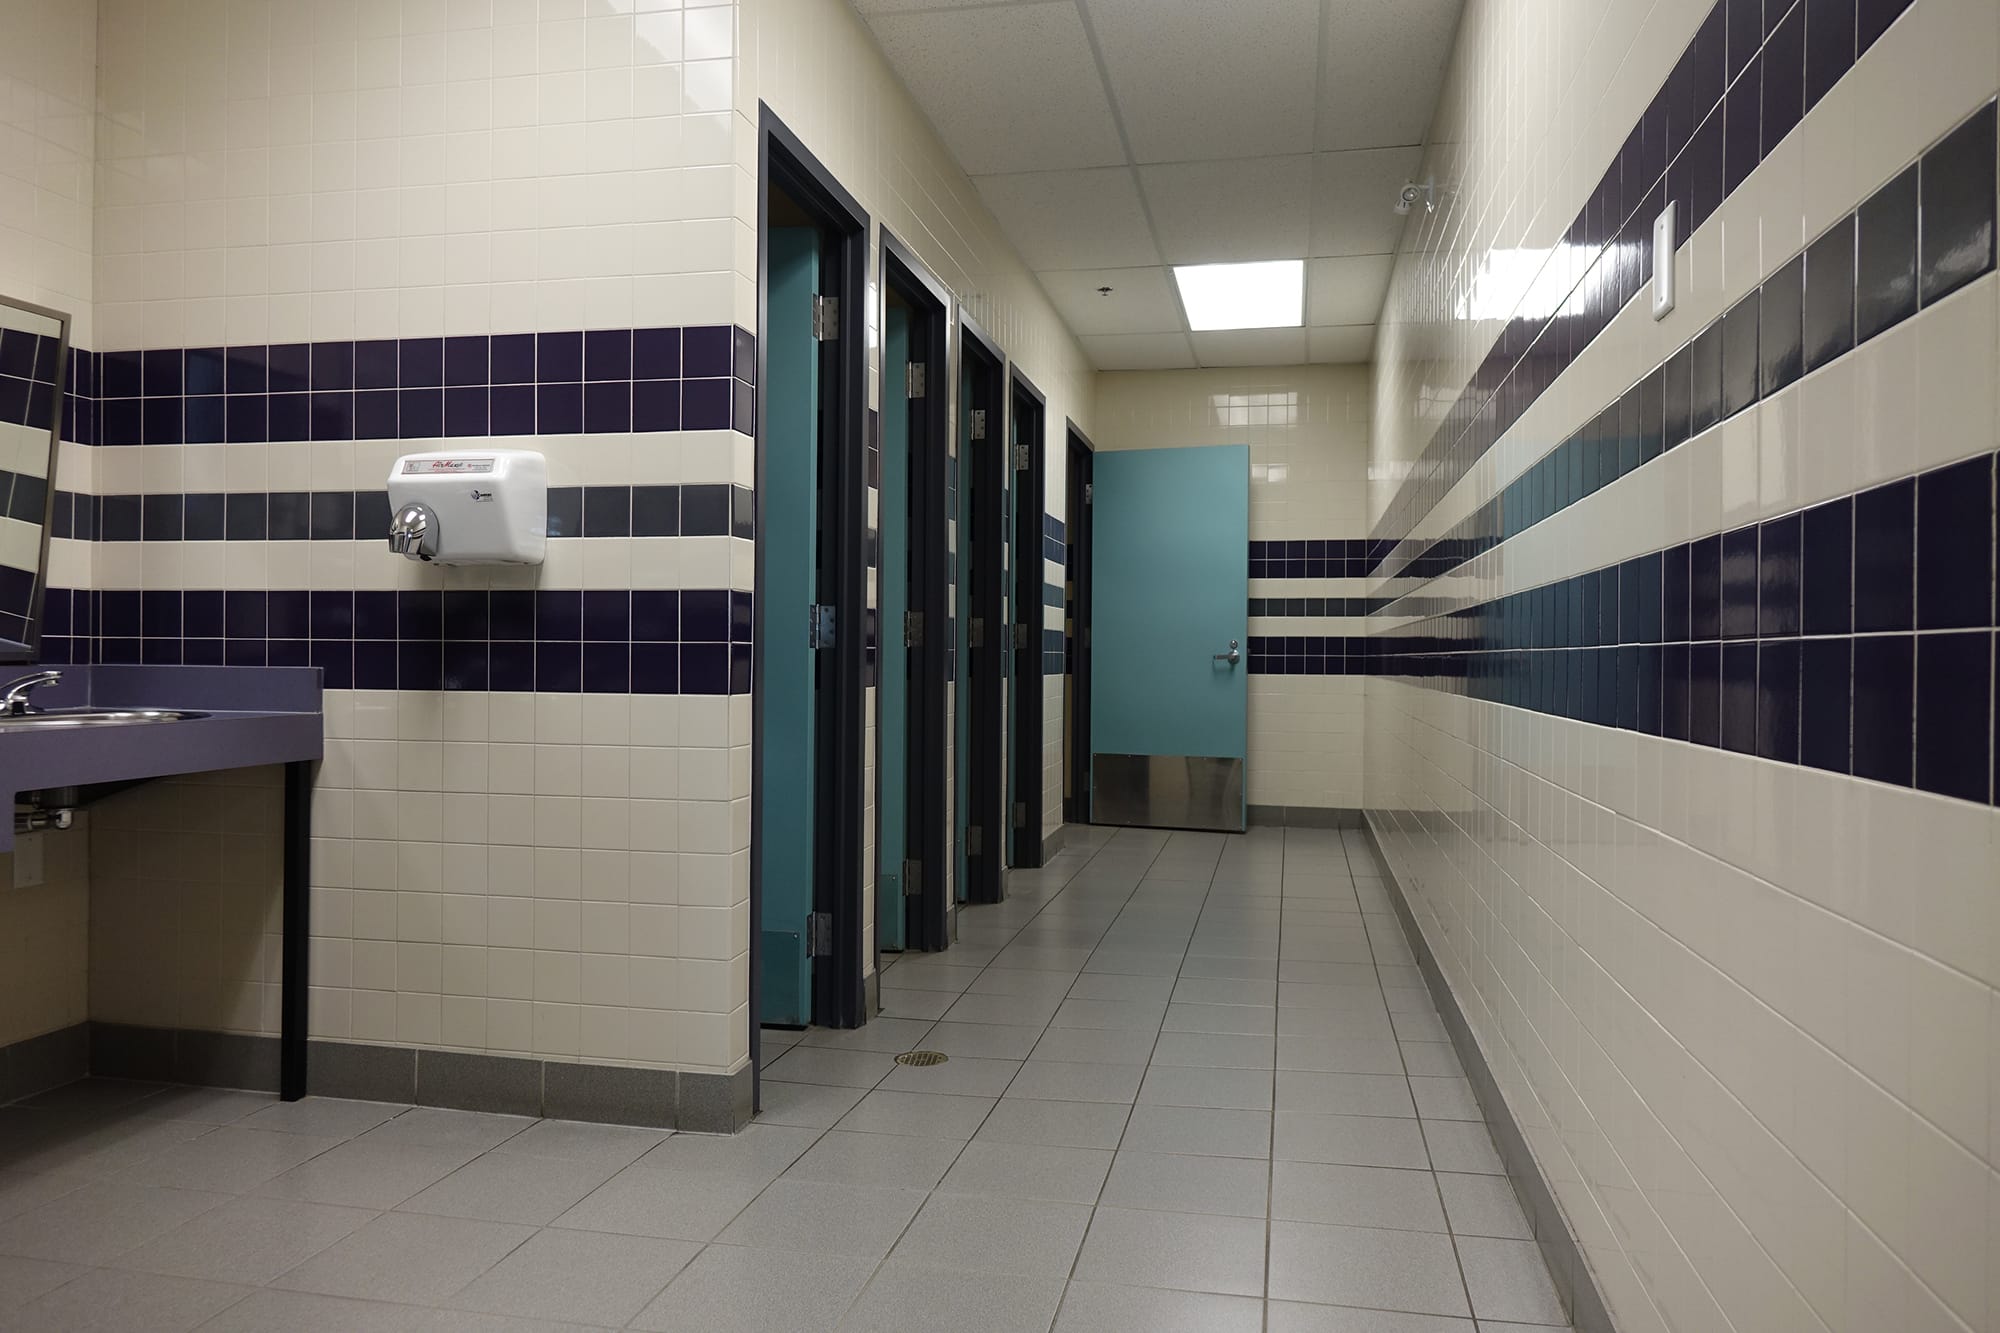 Derek Taylor Public School interior bathroom